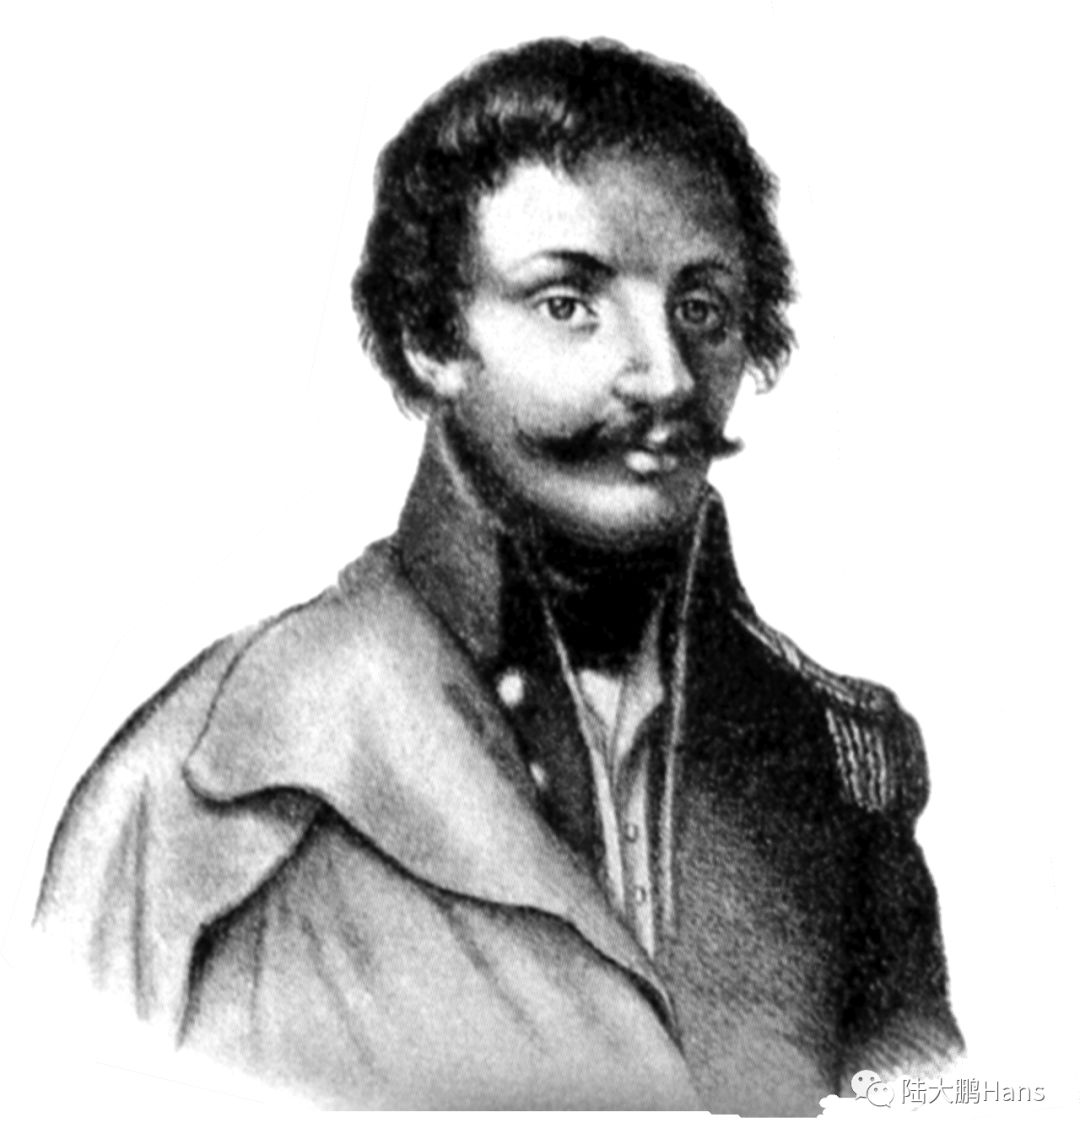 瓦迪斯瓦夫弗朗齐歇克雅布翁诺夫斯基将军 贝姆自幼对工程技术感兴趣